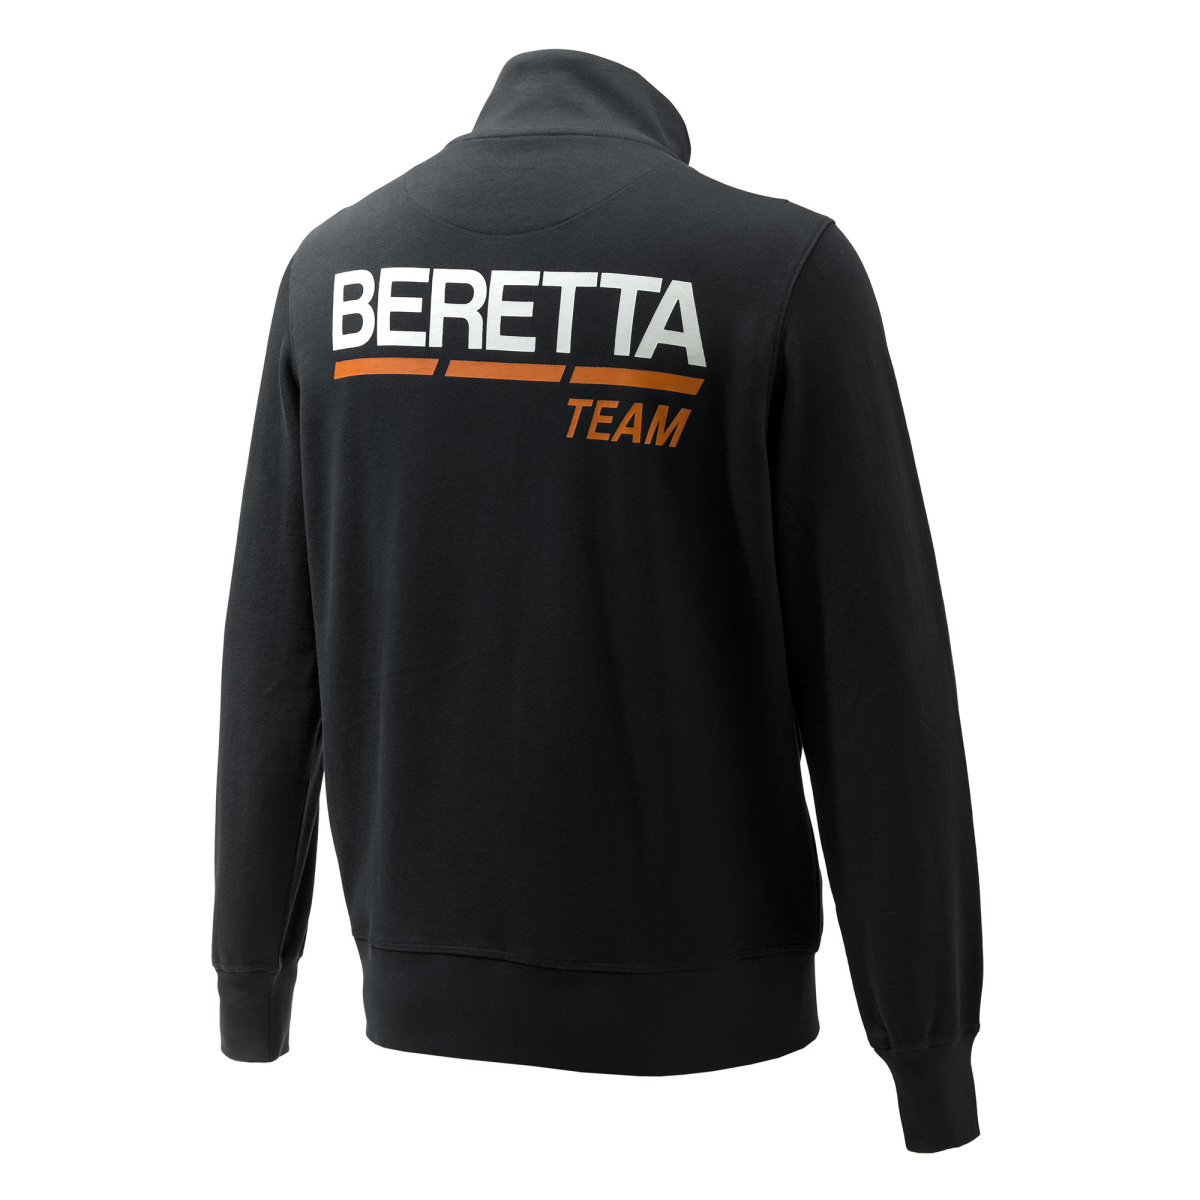 ベレッタ チームスウェット（ブラック）Sサイズ/Beretta Team Sweatshirt - Black